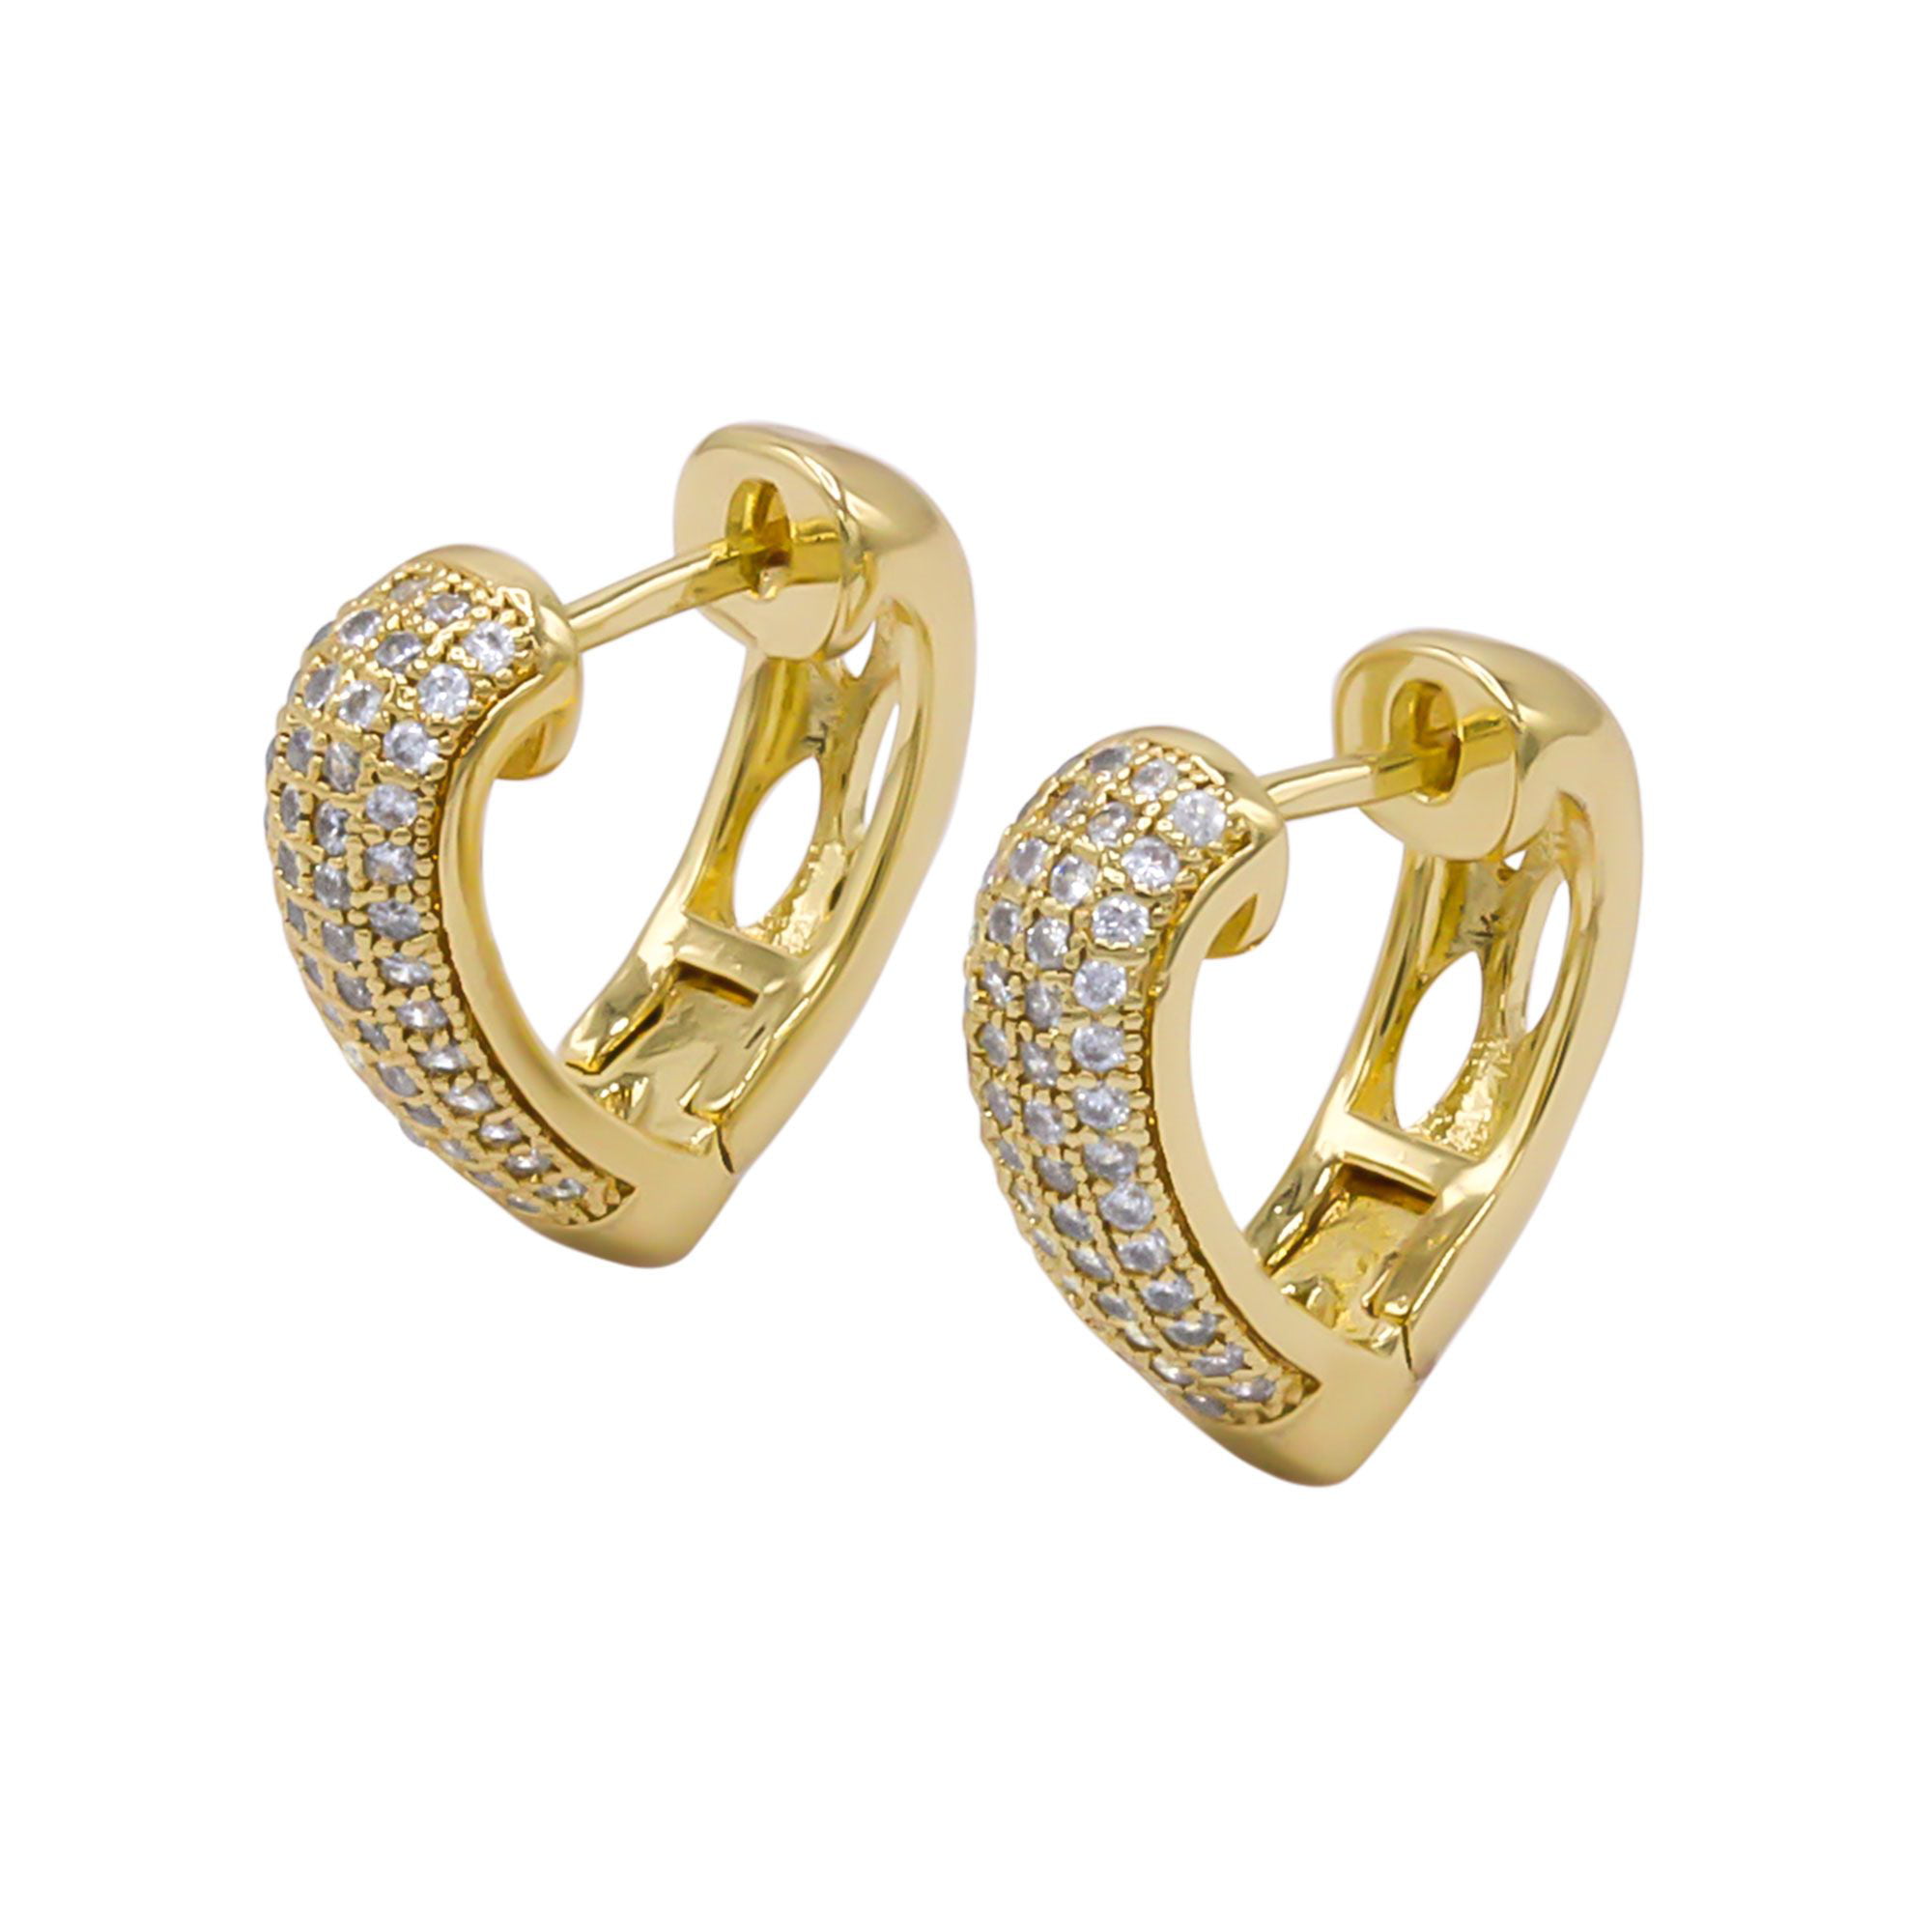 28mm X 6mm 14k Two-tone Gold Cubic Zirconia Dangle Huggies Earrings,